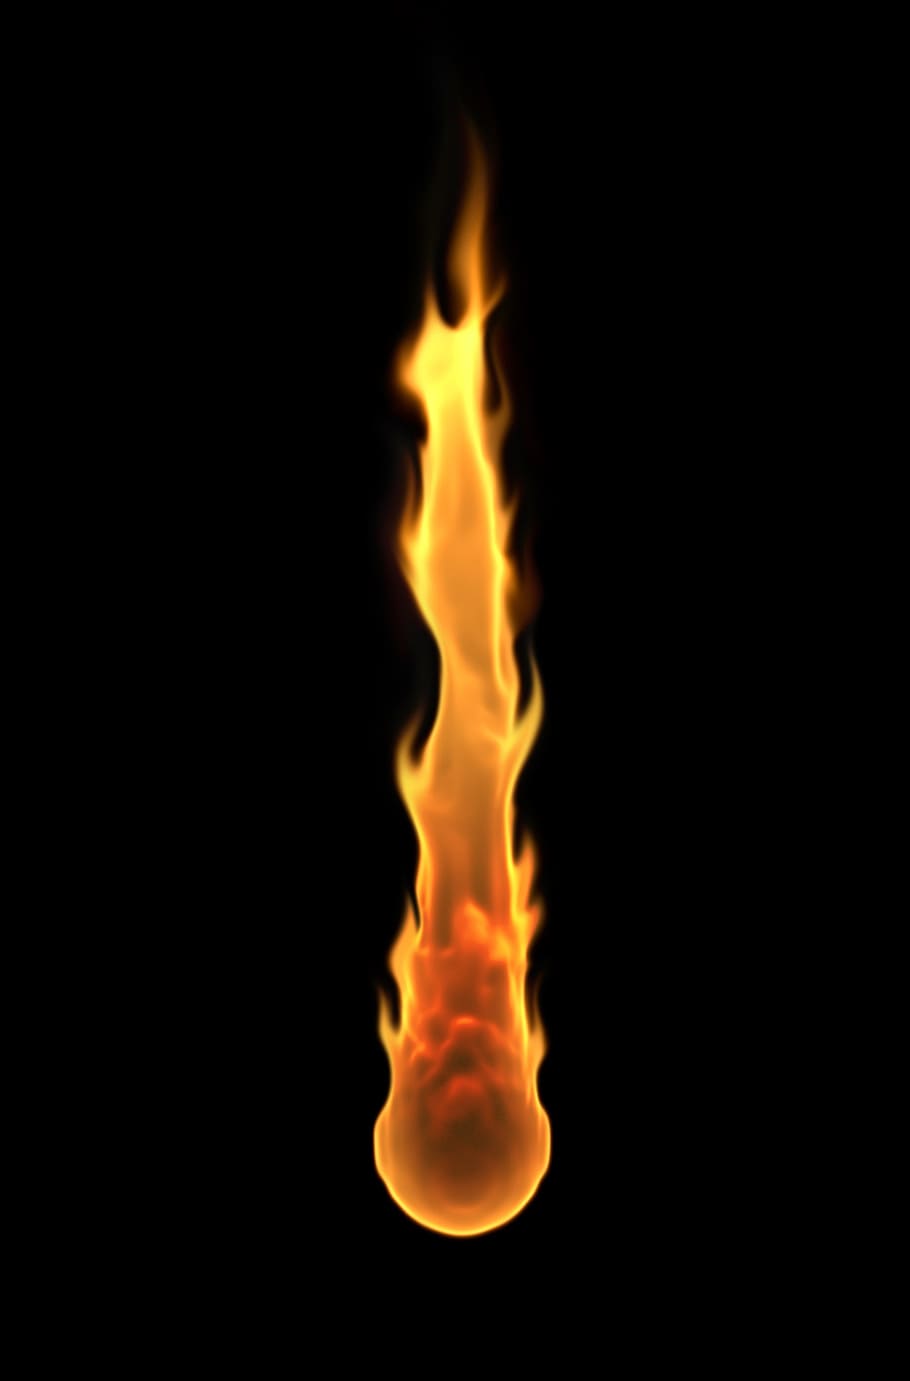 炎, 火, 隕石, 燃える, 燃やす, 光, 燃焼, 黒の背景, 火-自然現象, 熱-温度